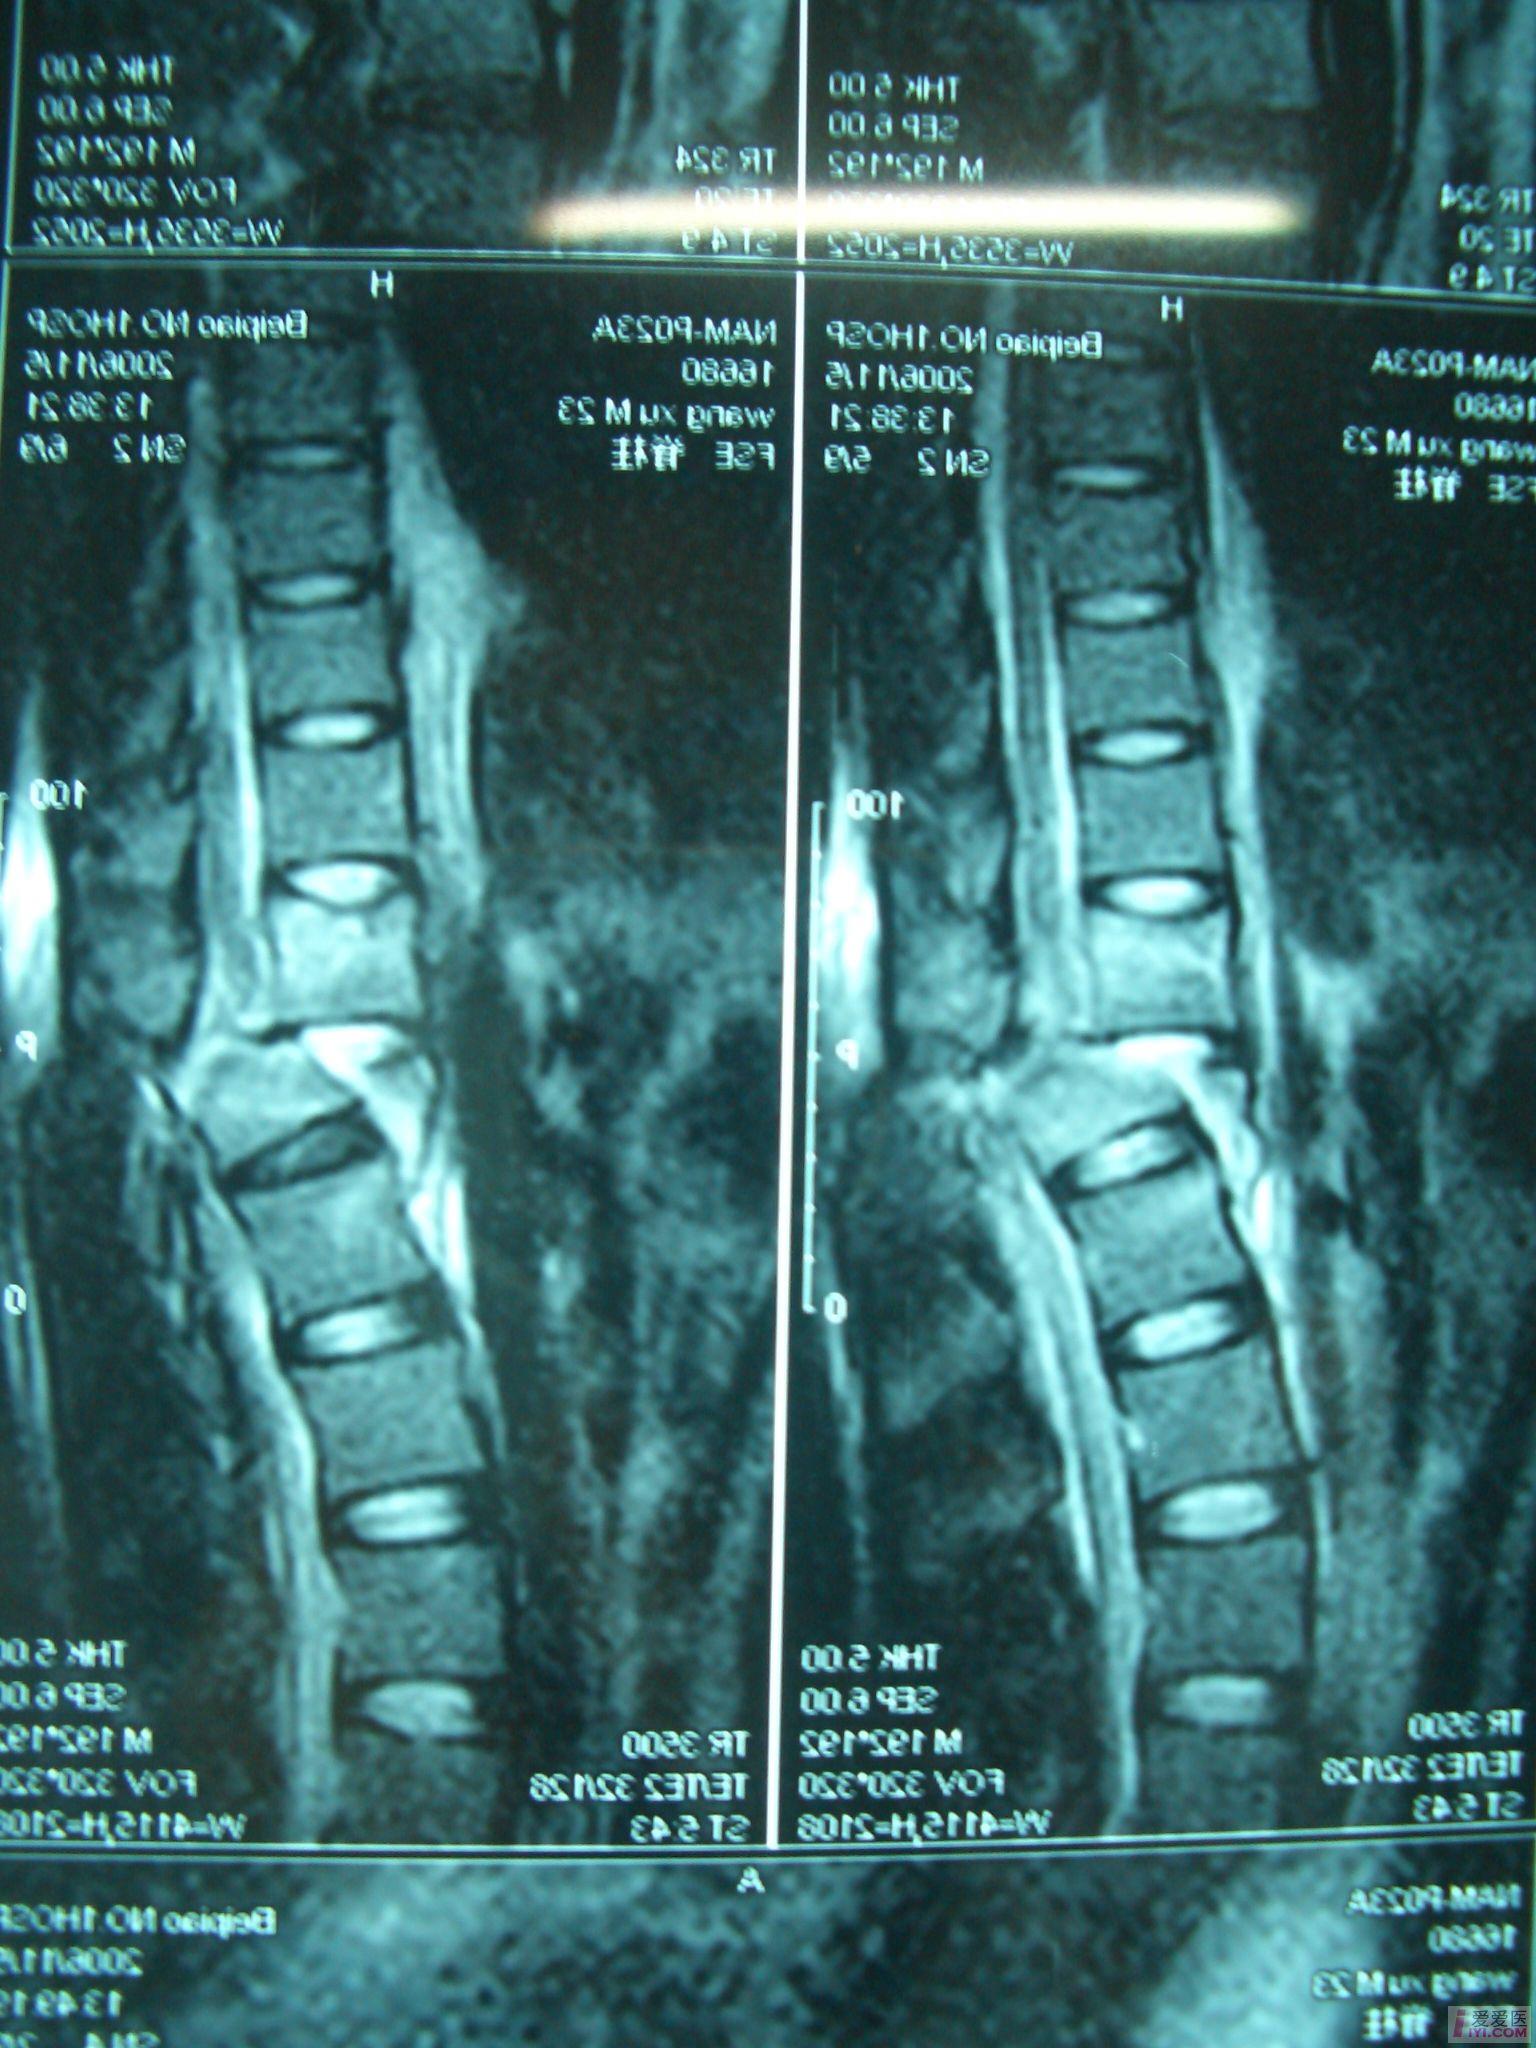 【讨论】t12压缩骨折,脱位伴脊髓损伤,截瘫